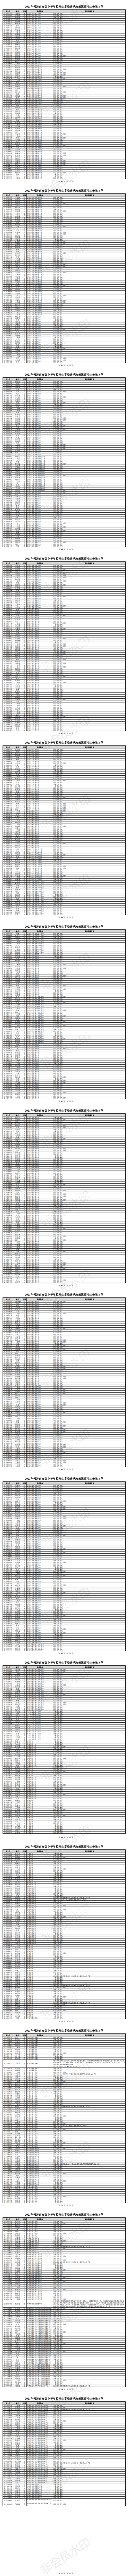 2021天津中考升学政策照顾考生名单公示啦！这也太多了吧？